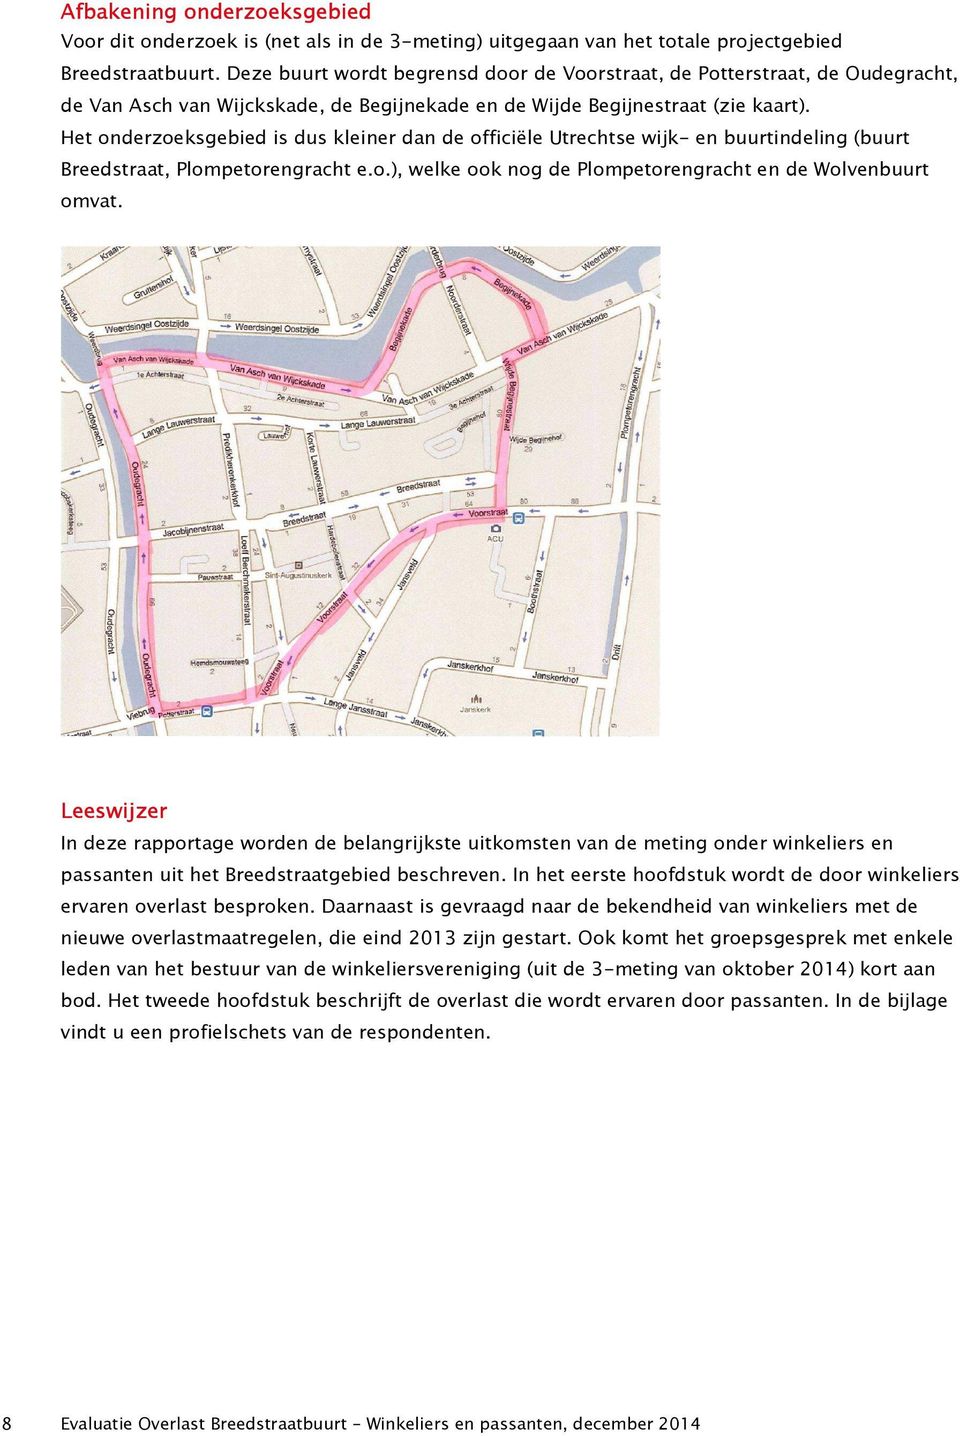 Het onderzoeksgebied is dus kleiner dan de officiële Utrechtse wijk- en buurtindeling (buurt Breedstraat, Plompetorengracht e.o.), welke ook nog de Plompetorengracht en de Wolvenbuurt omvat.